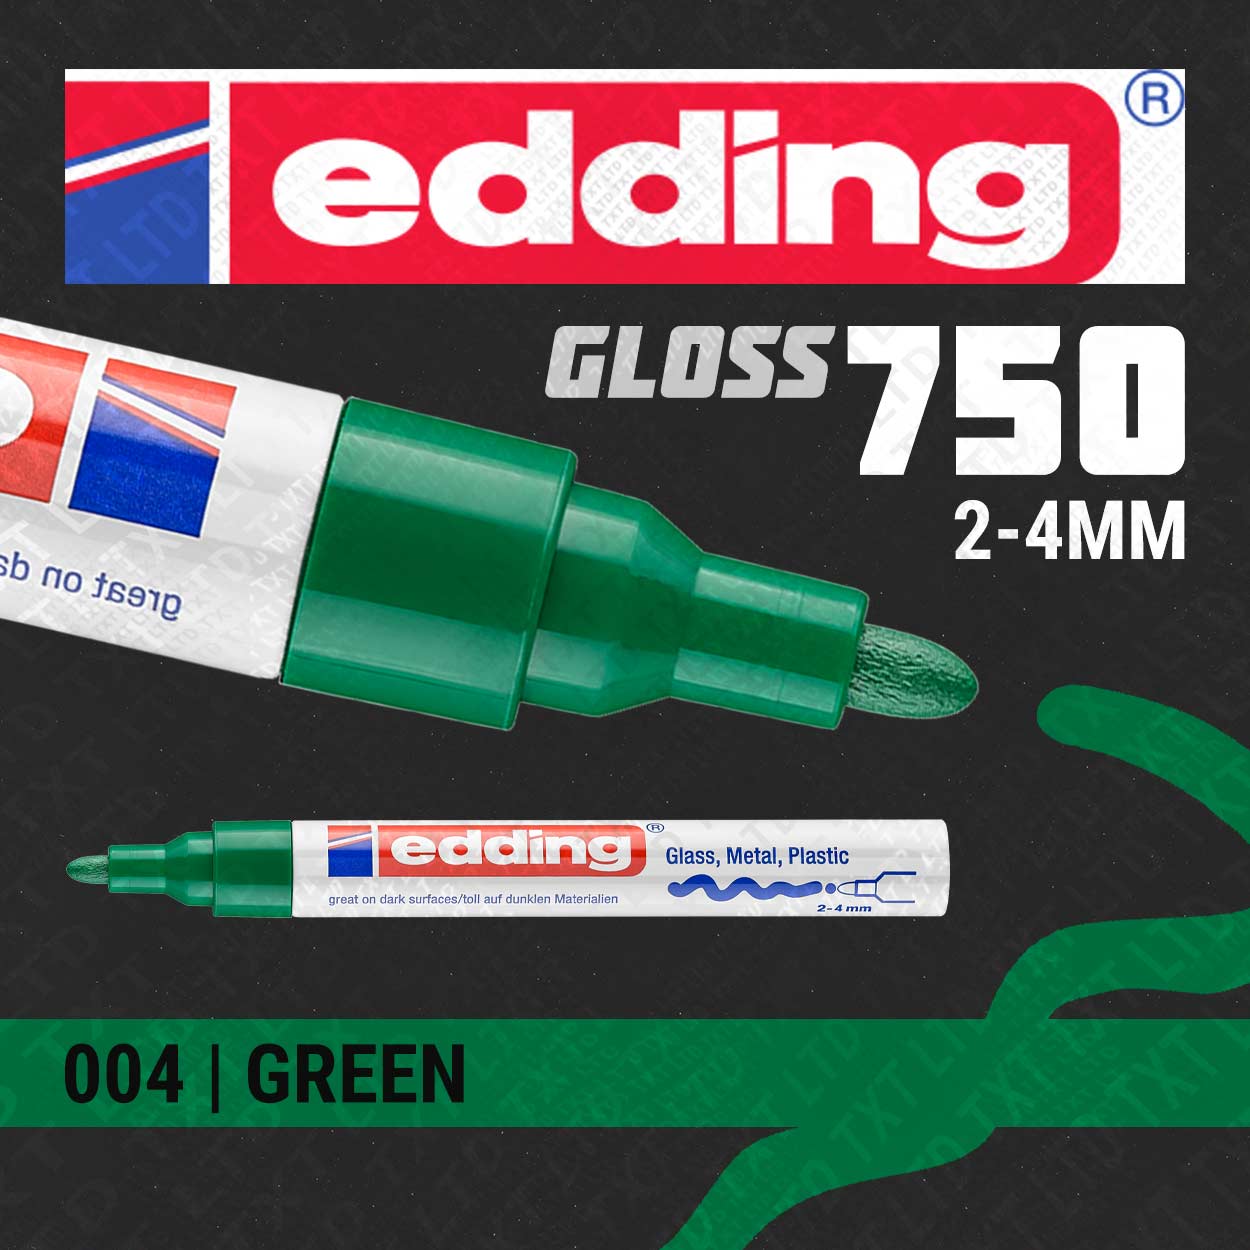 edding 750 Gloss Paint Marker